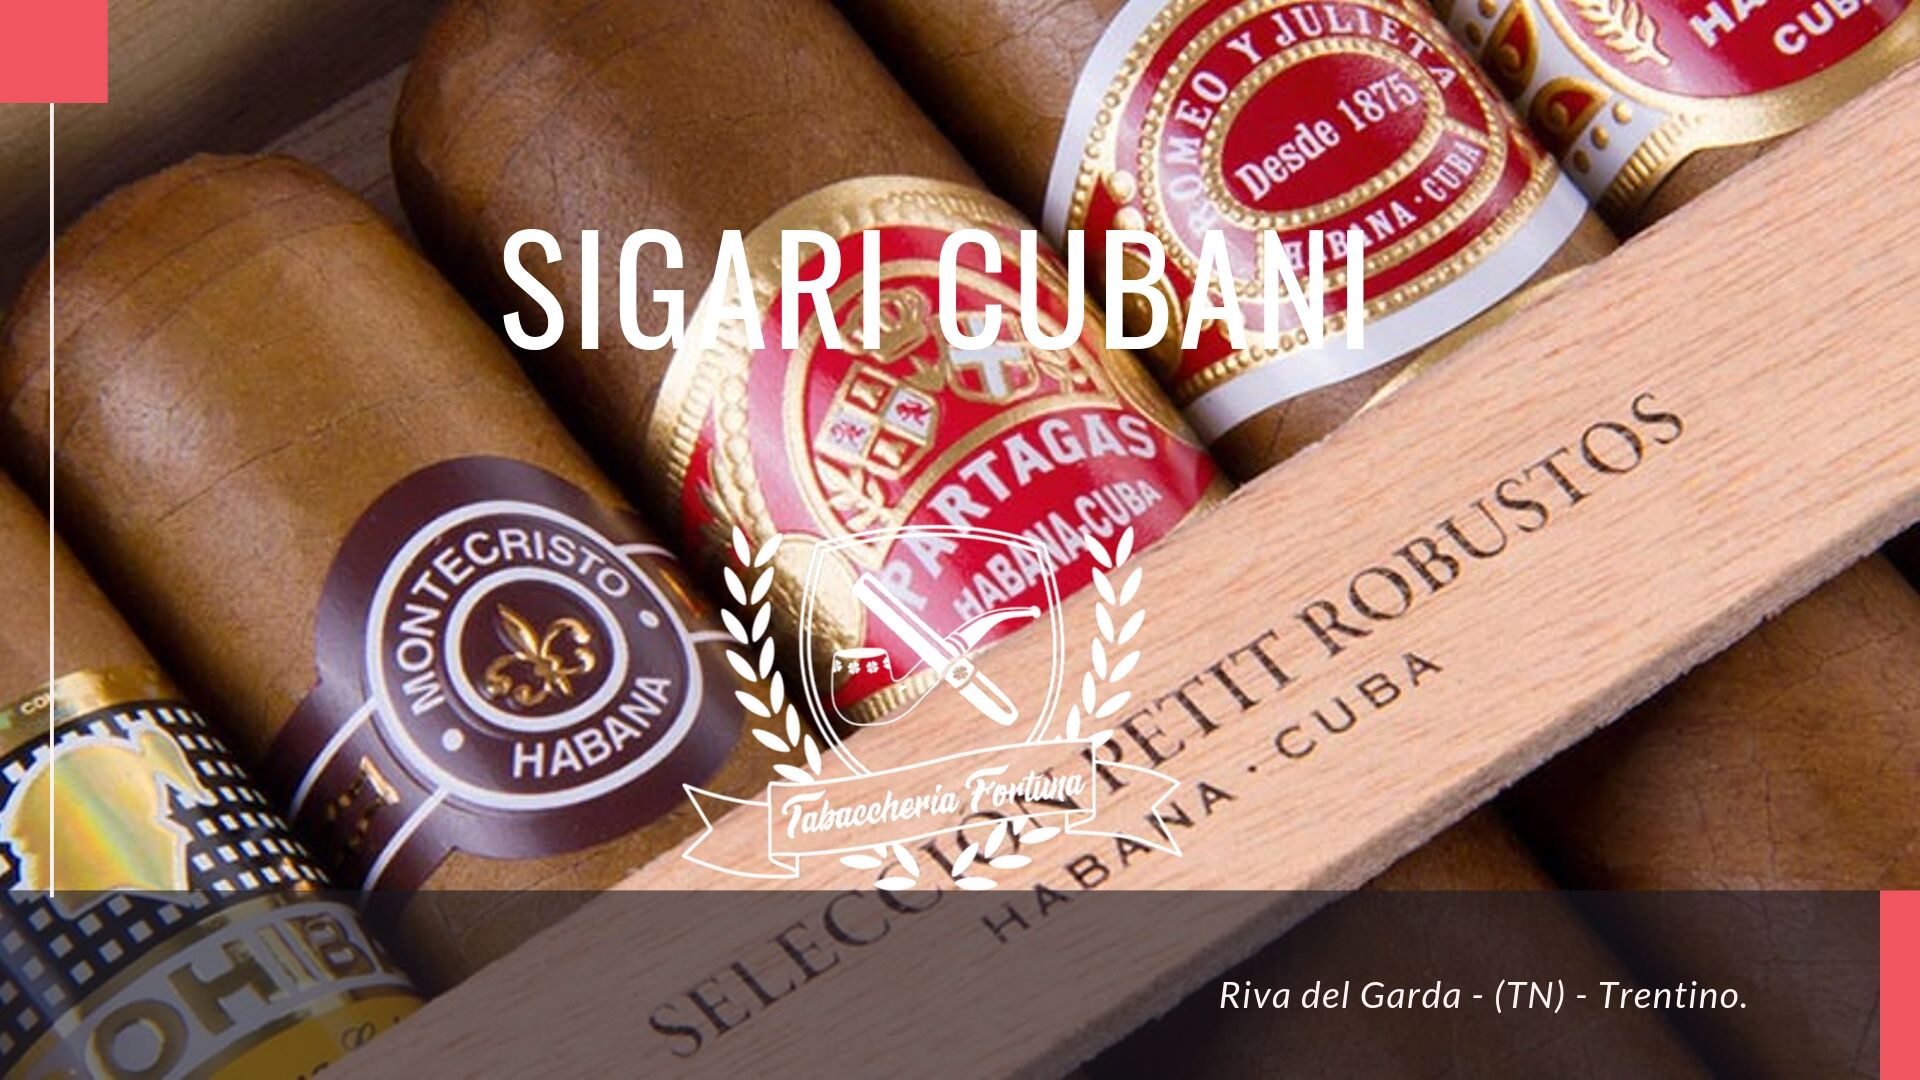 Tutti i sigari cubani attualmente sono puros habanos, termine che indica che tutte le sue componenti sono di medesima provenienza